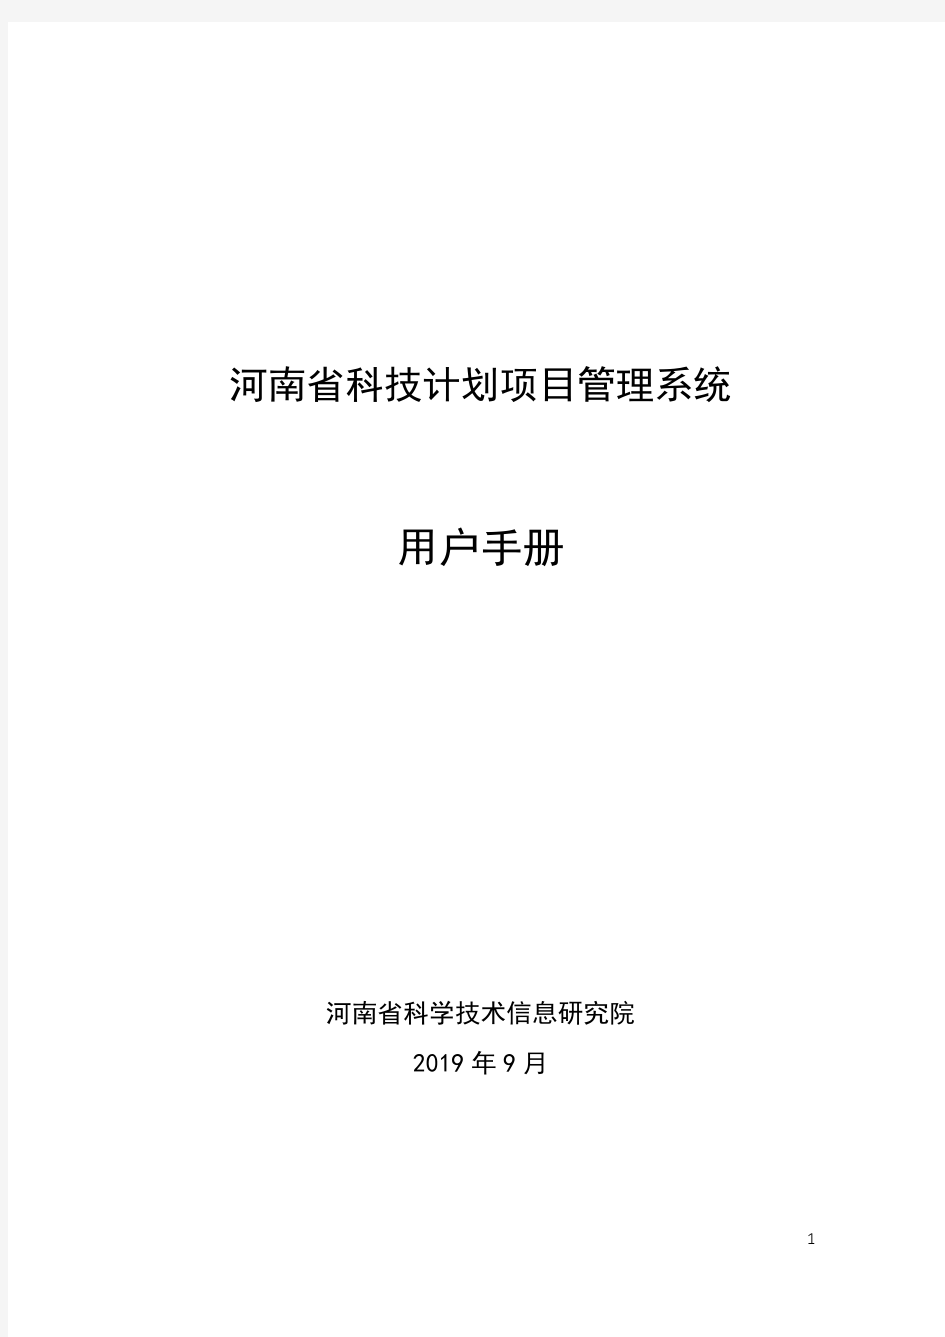 河南省科技计划项目管理系统